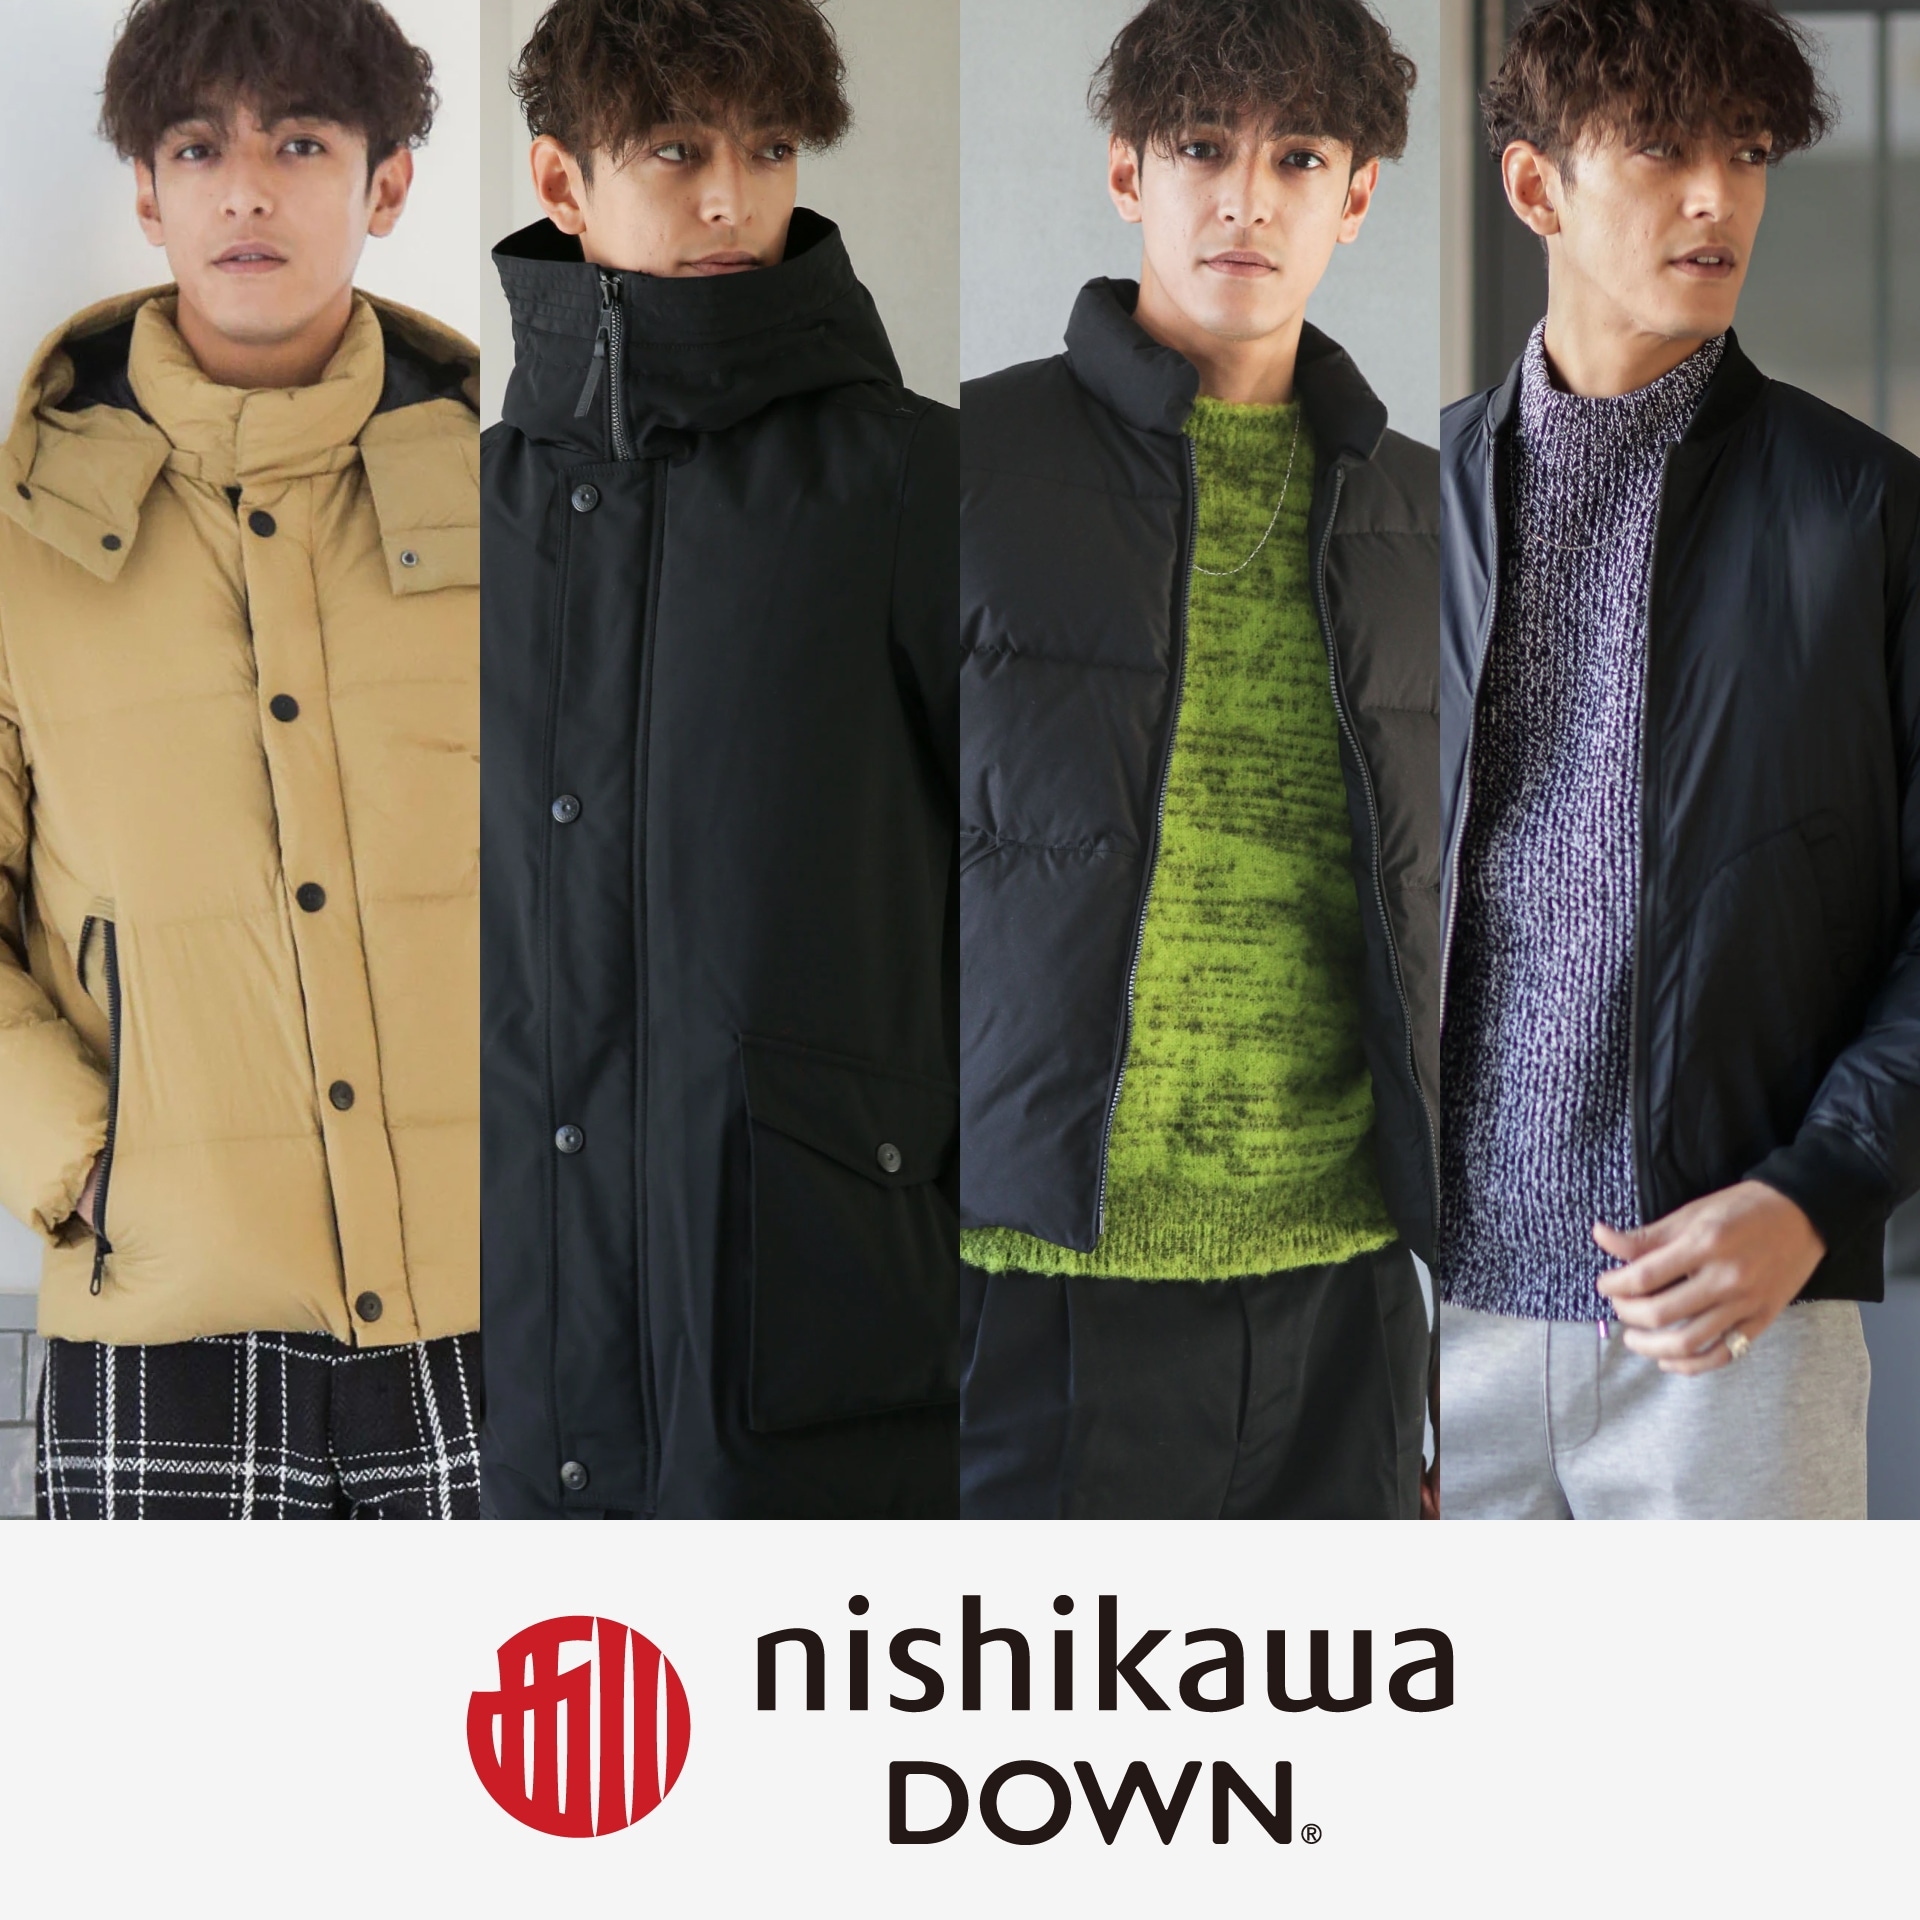 暖かく快適に、寒い冬を乗り切る「nishikawa DOWN®」